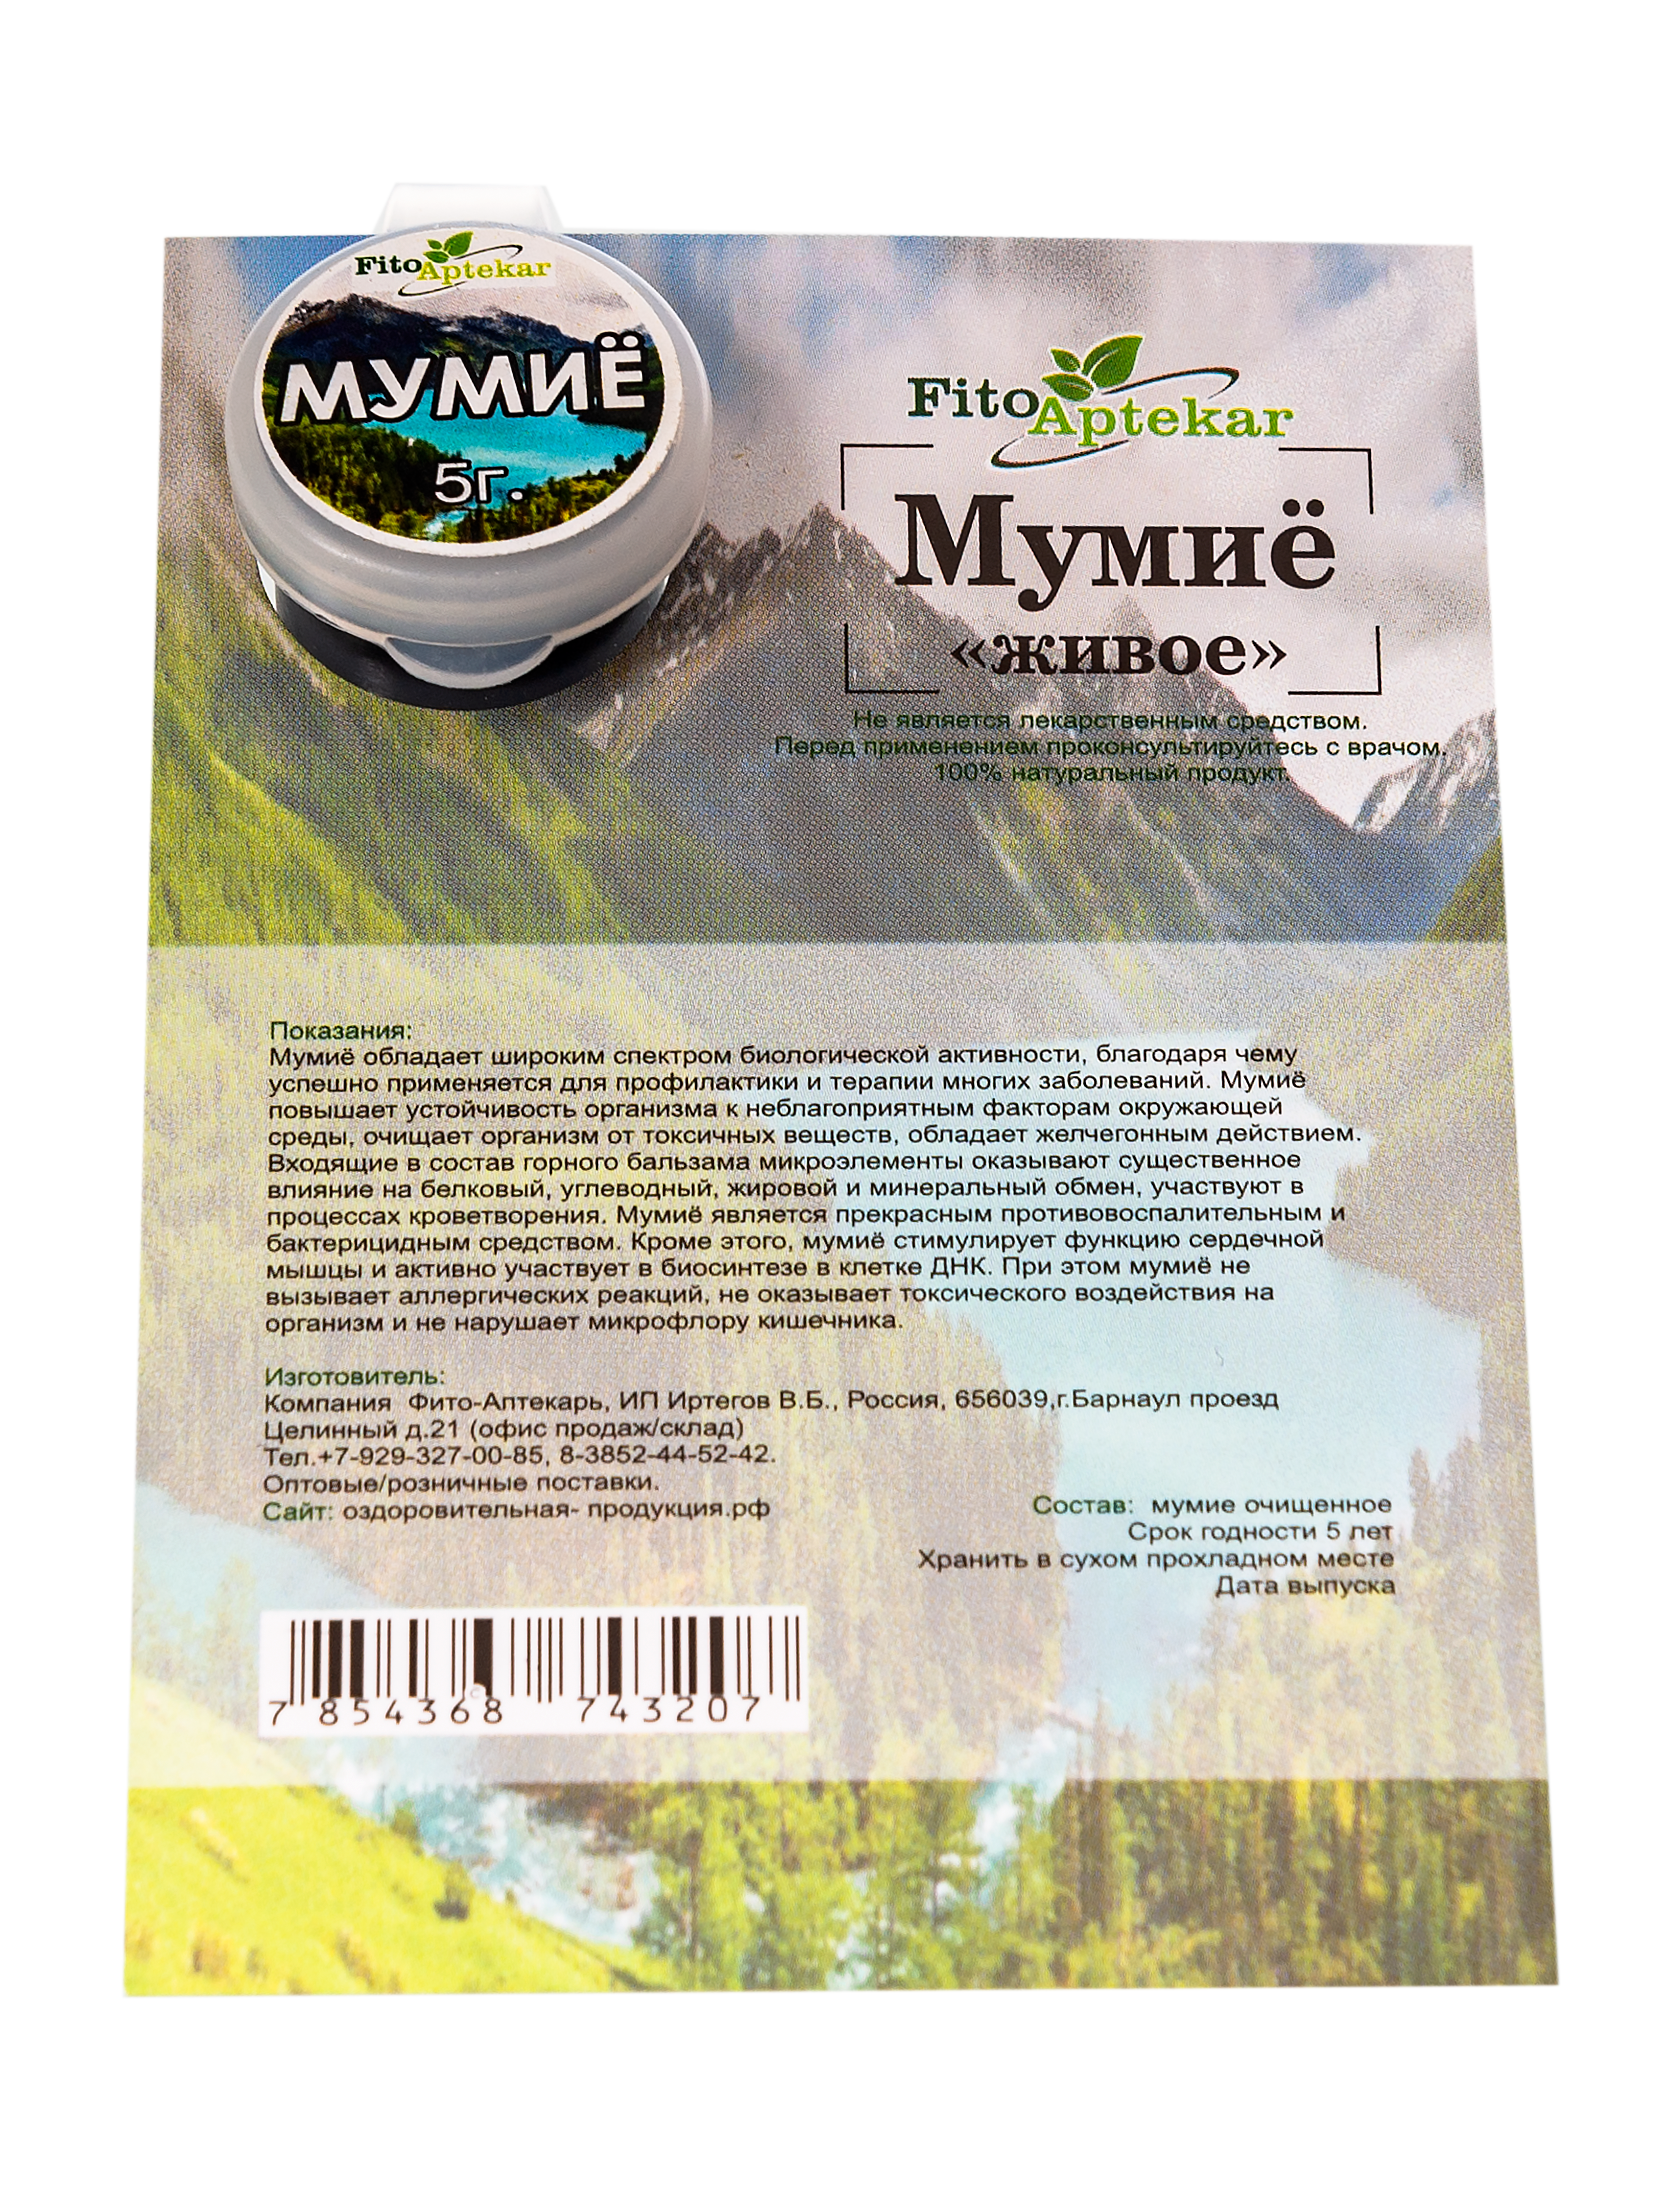 Мумиё Алтайское без добавок в Москве